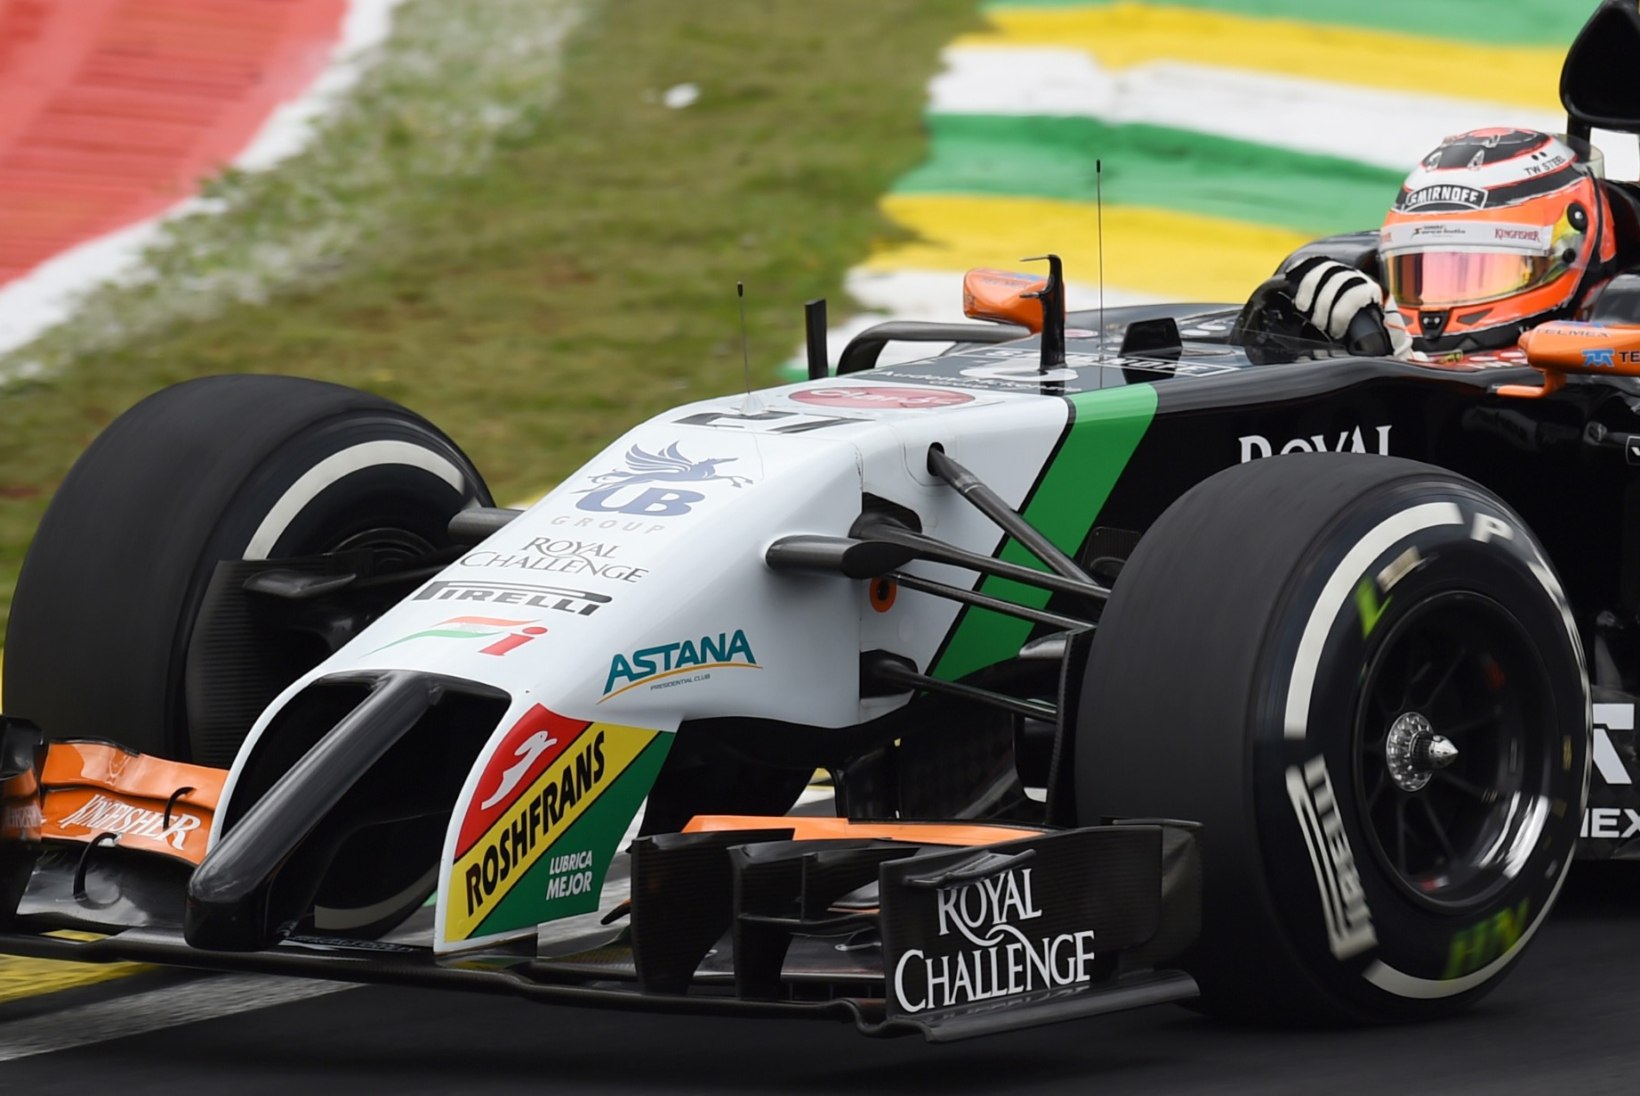 GALERII: Võitlus esikohale jätkub - Rosberg tegi kvalifikatsioonis Hamiltonile ära. 